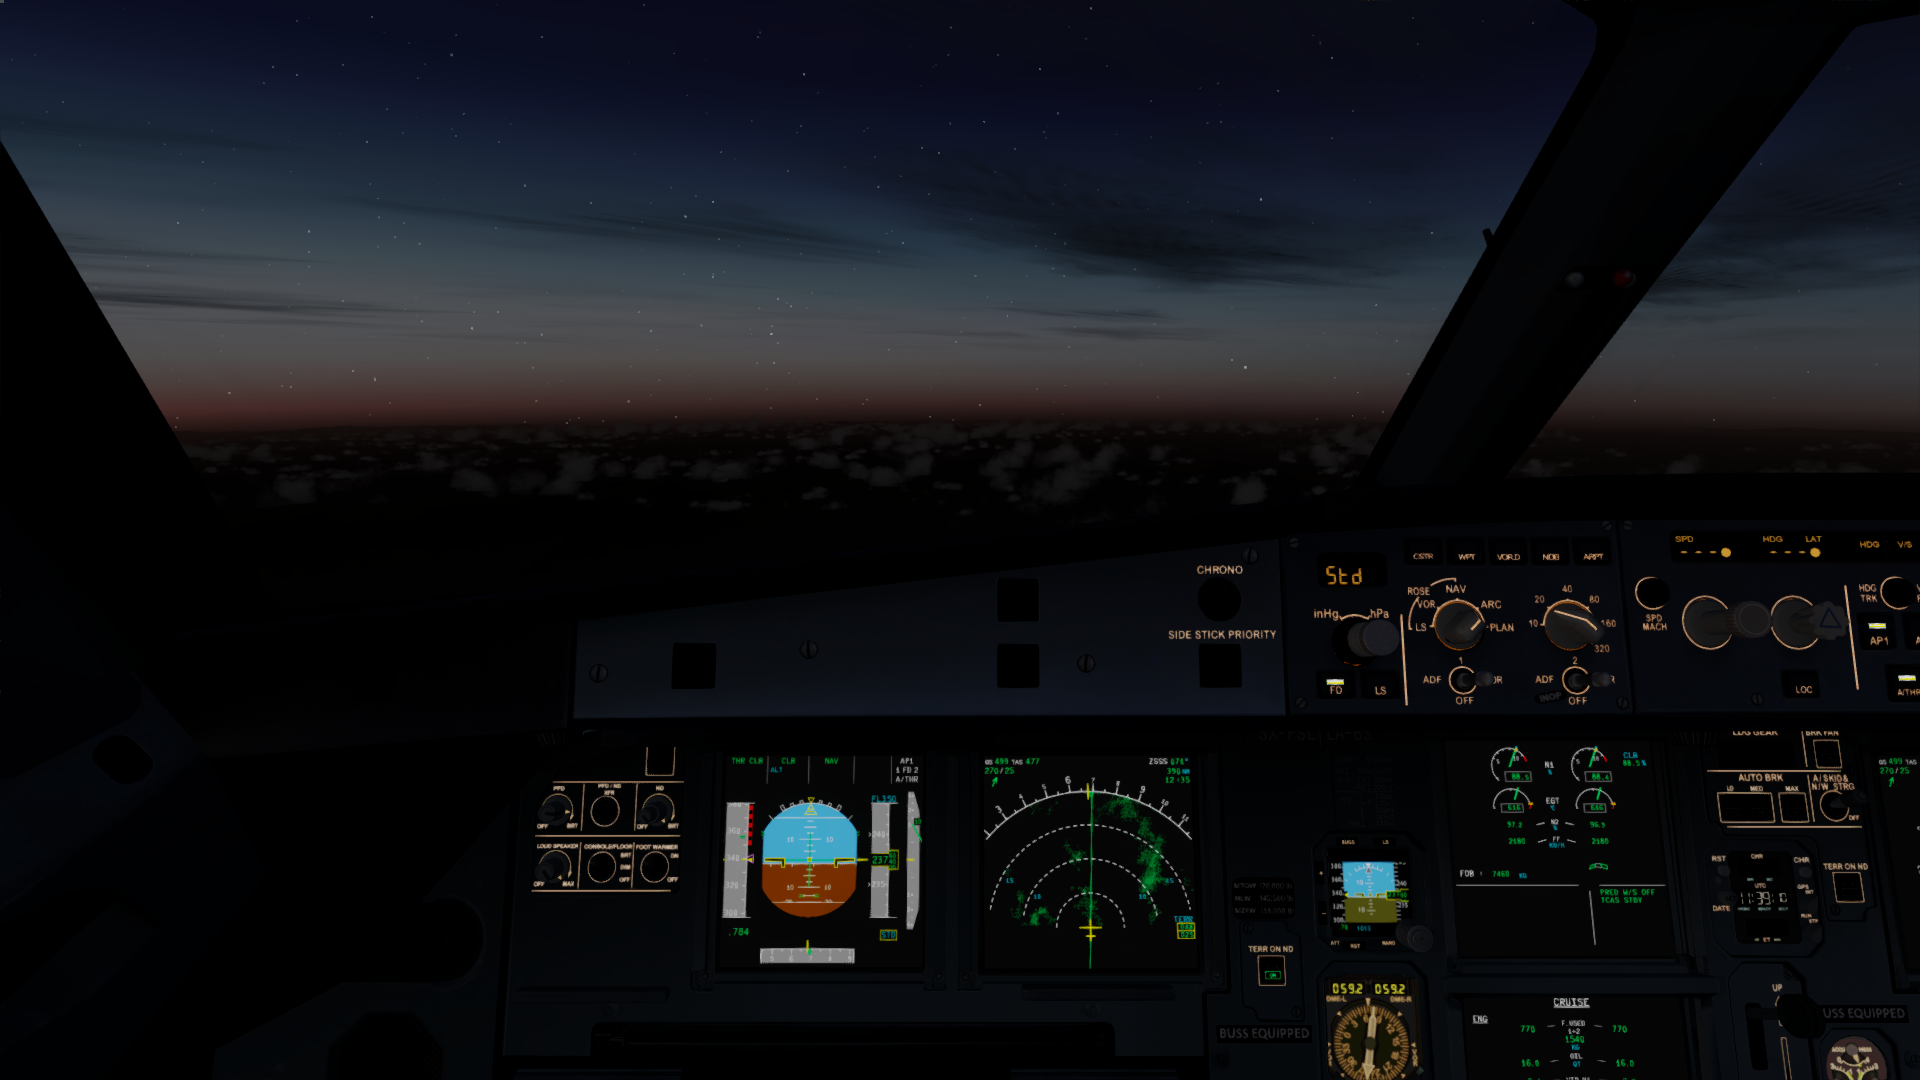 A320夜航-7179 